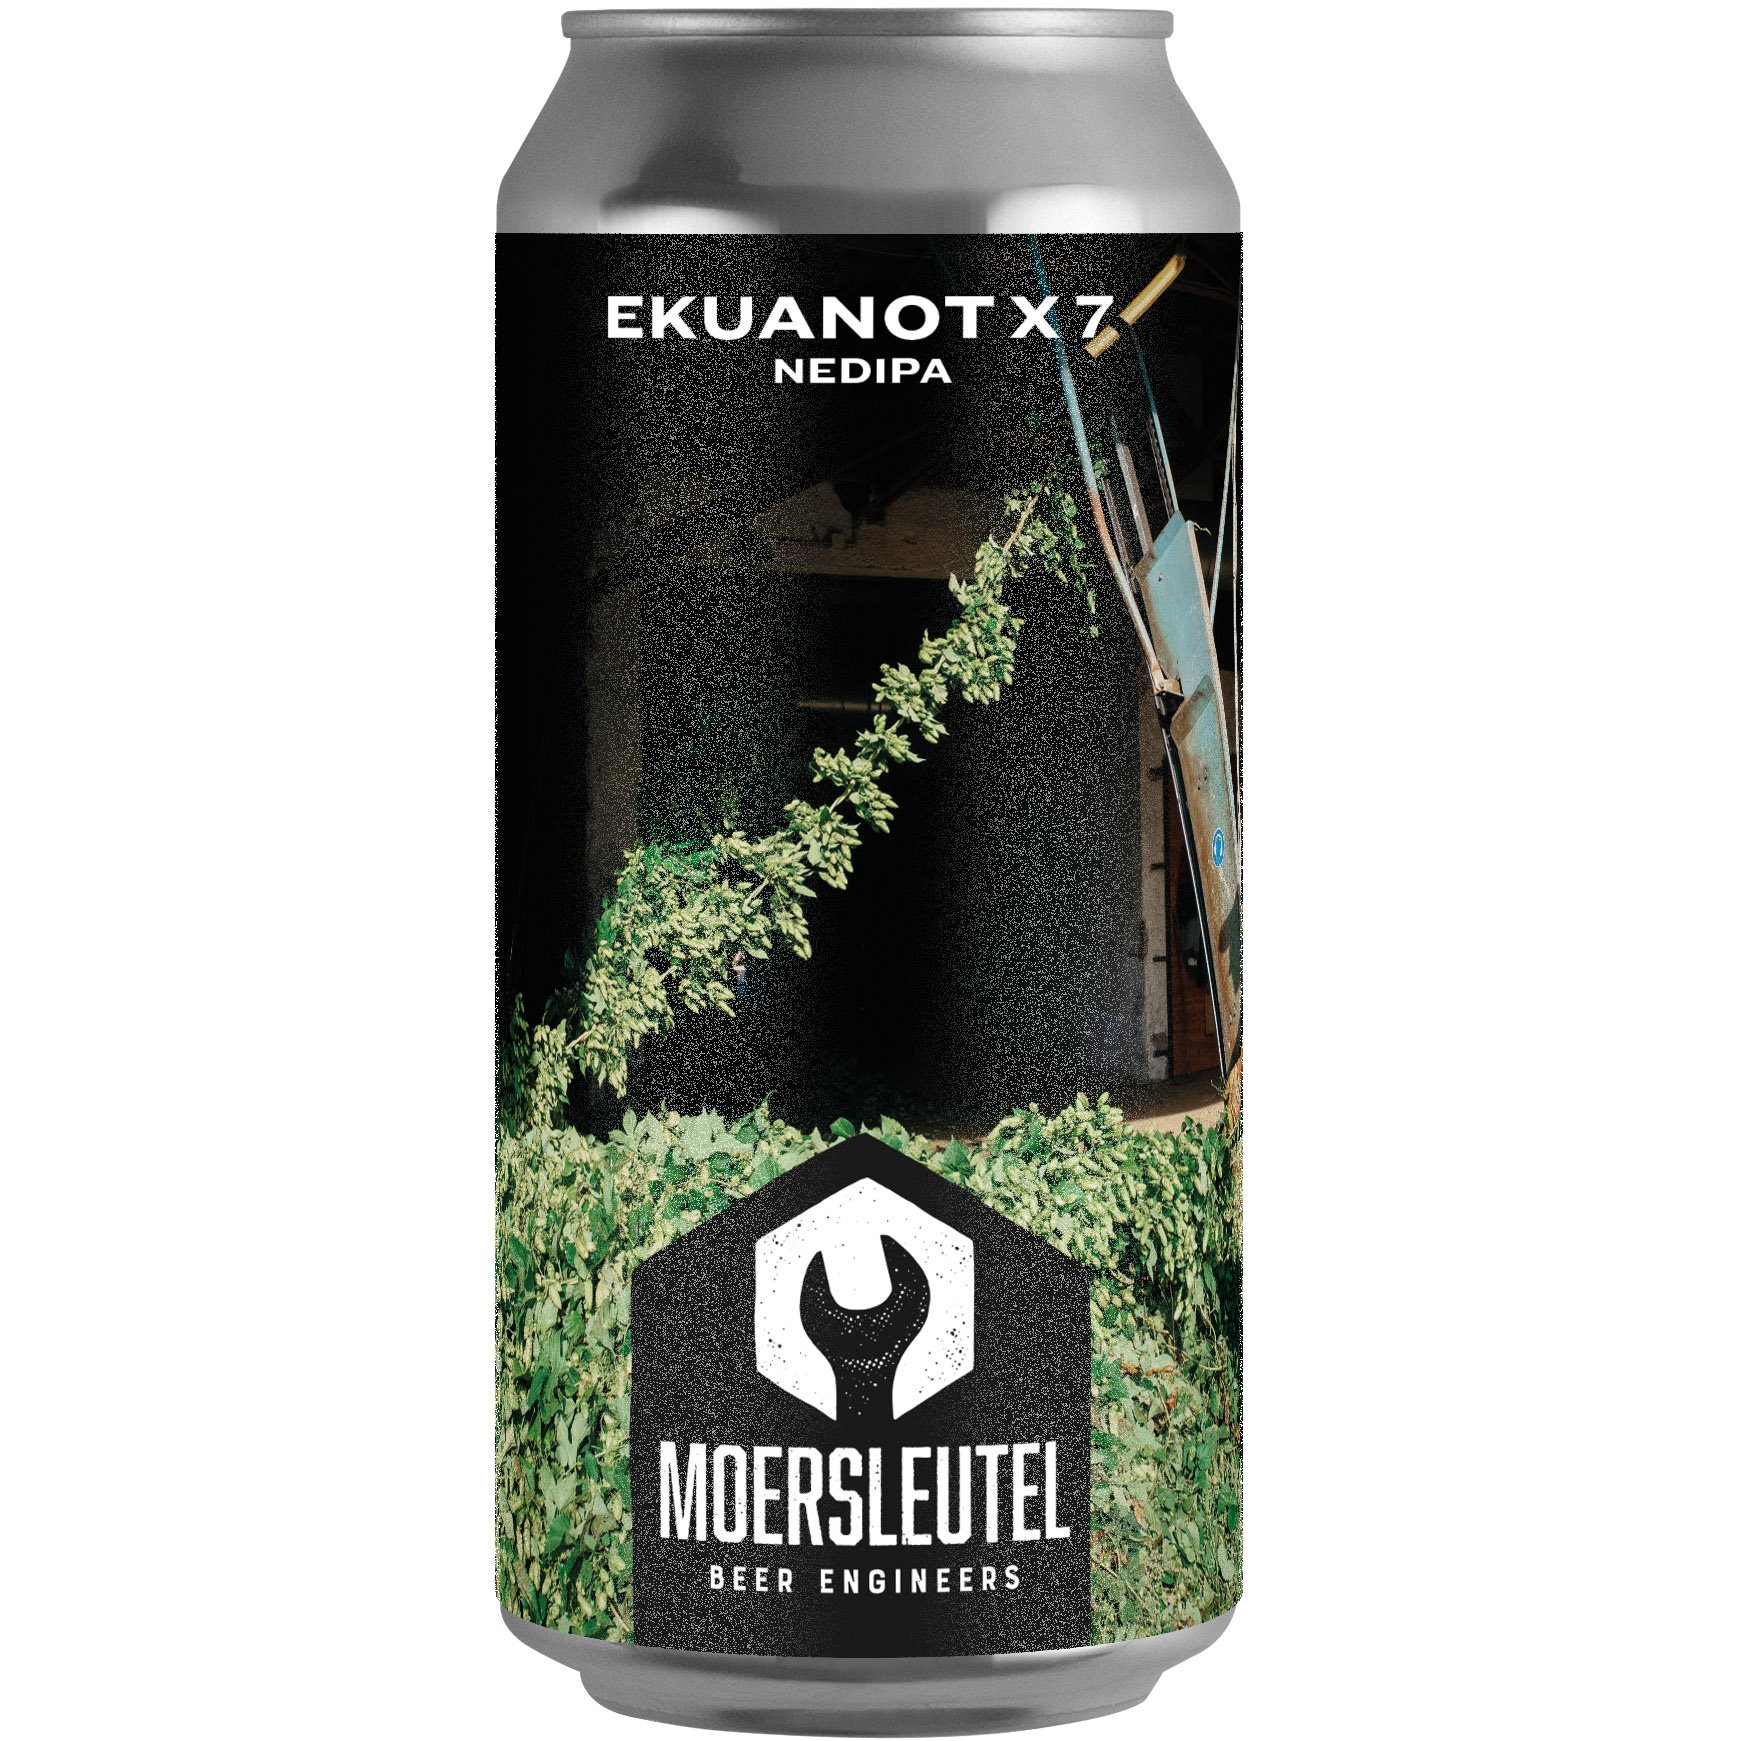 Пиво Moersleutel Ekuanot x7 Nedipa светлое 8% 0.44 л ж/б - фото 1